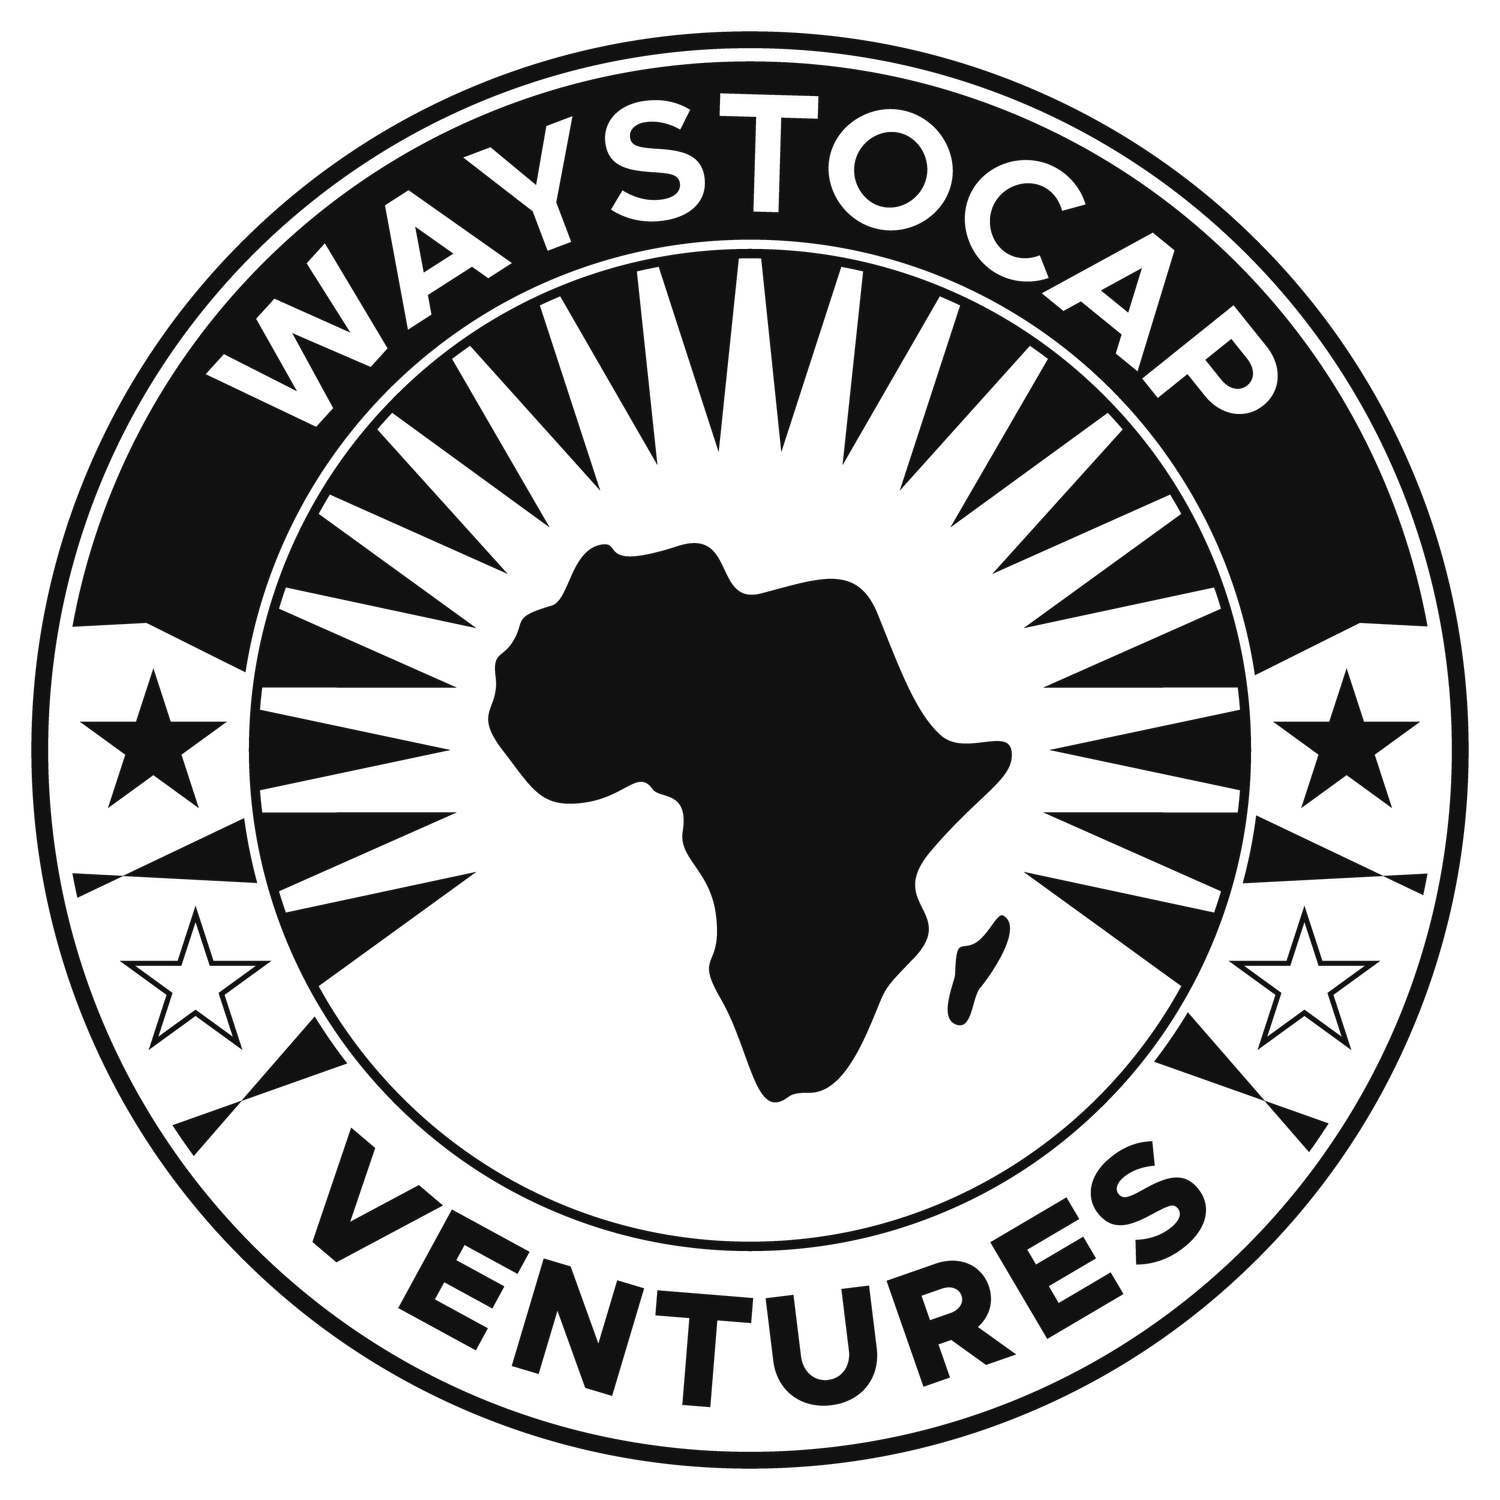 WaystoCap Ventures